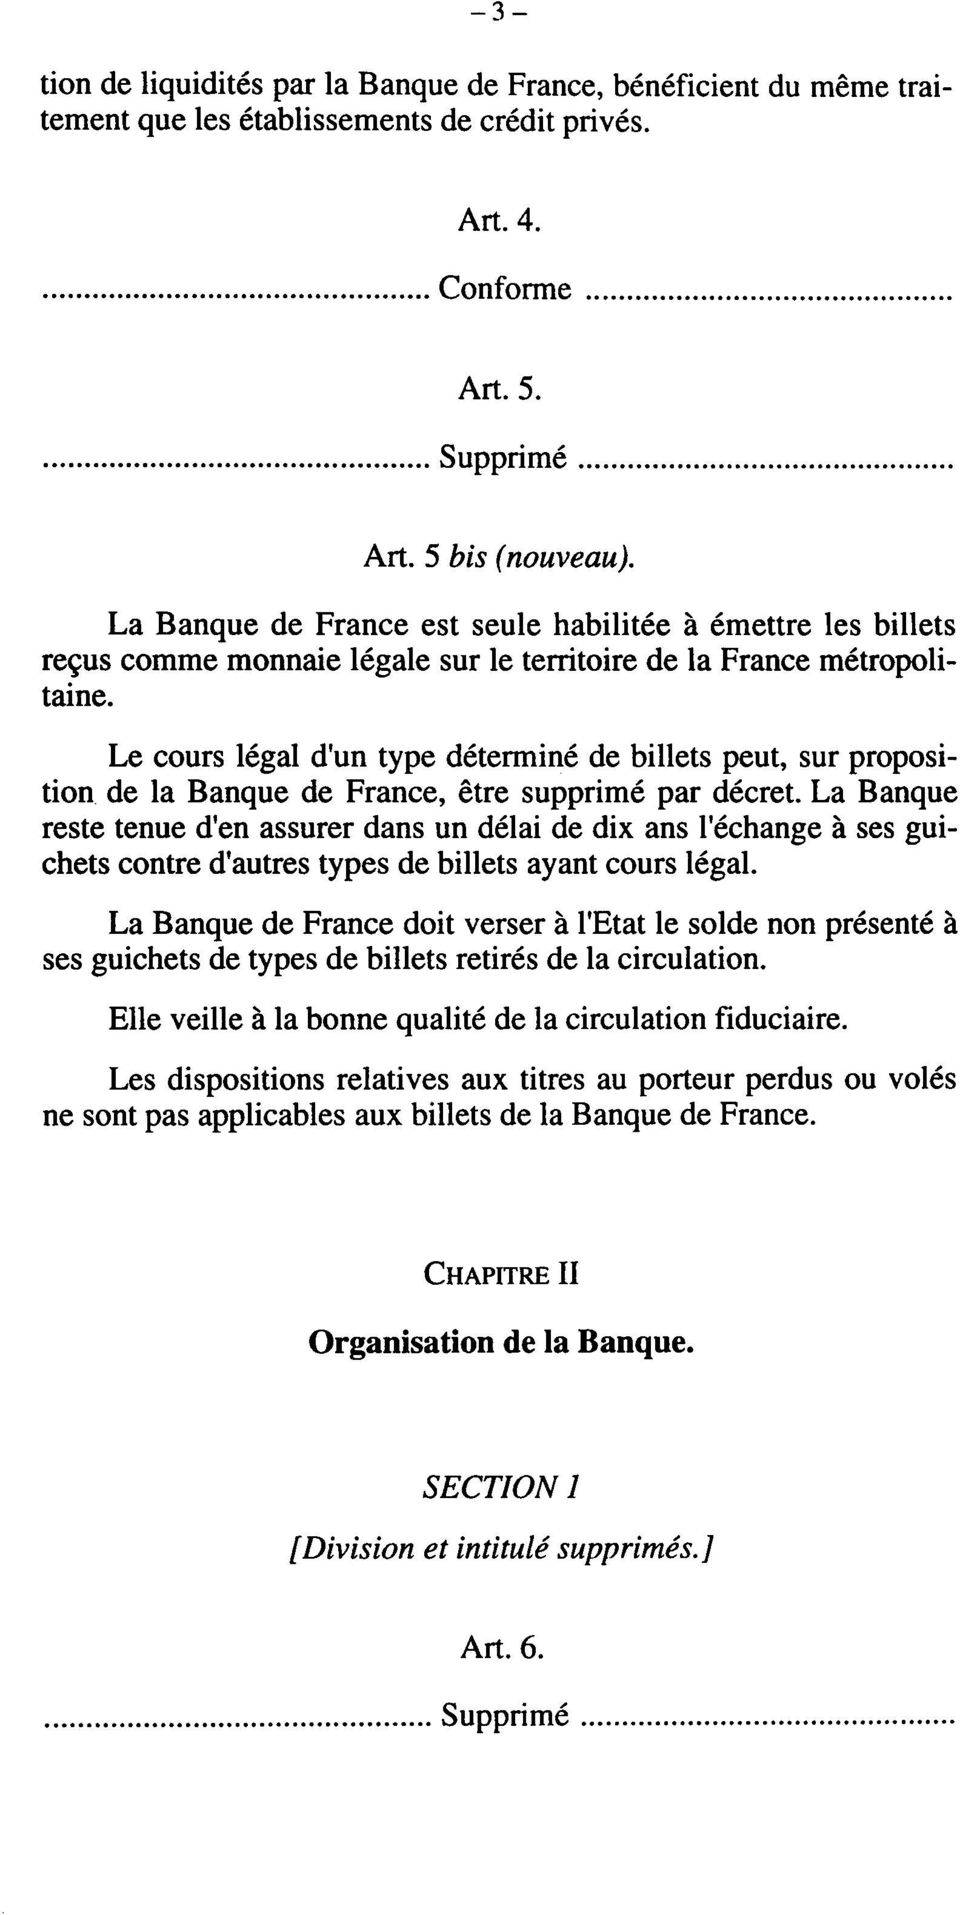 Le cours légal d'un type déterminé de billets peut, sur proposition de la Banque de France, être supprimé par décret.